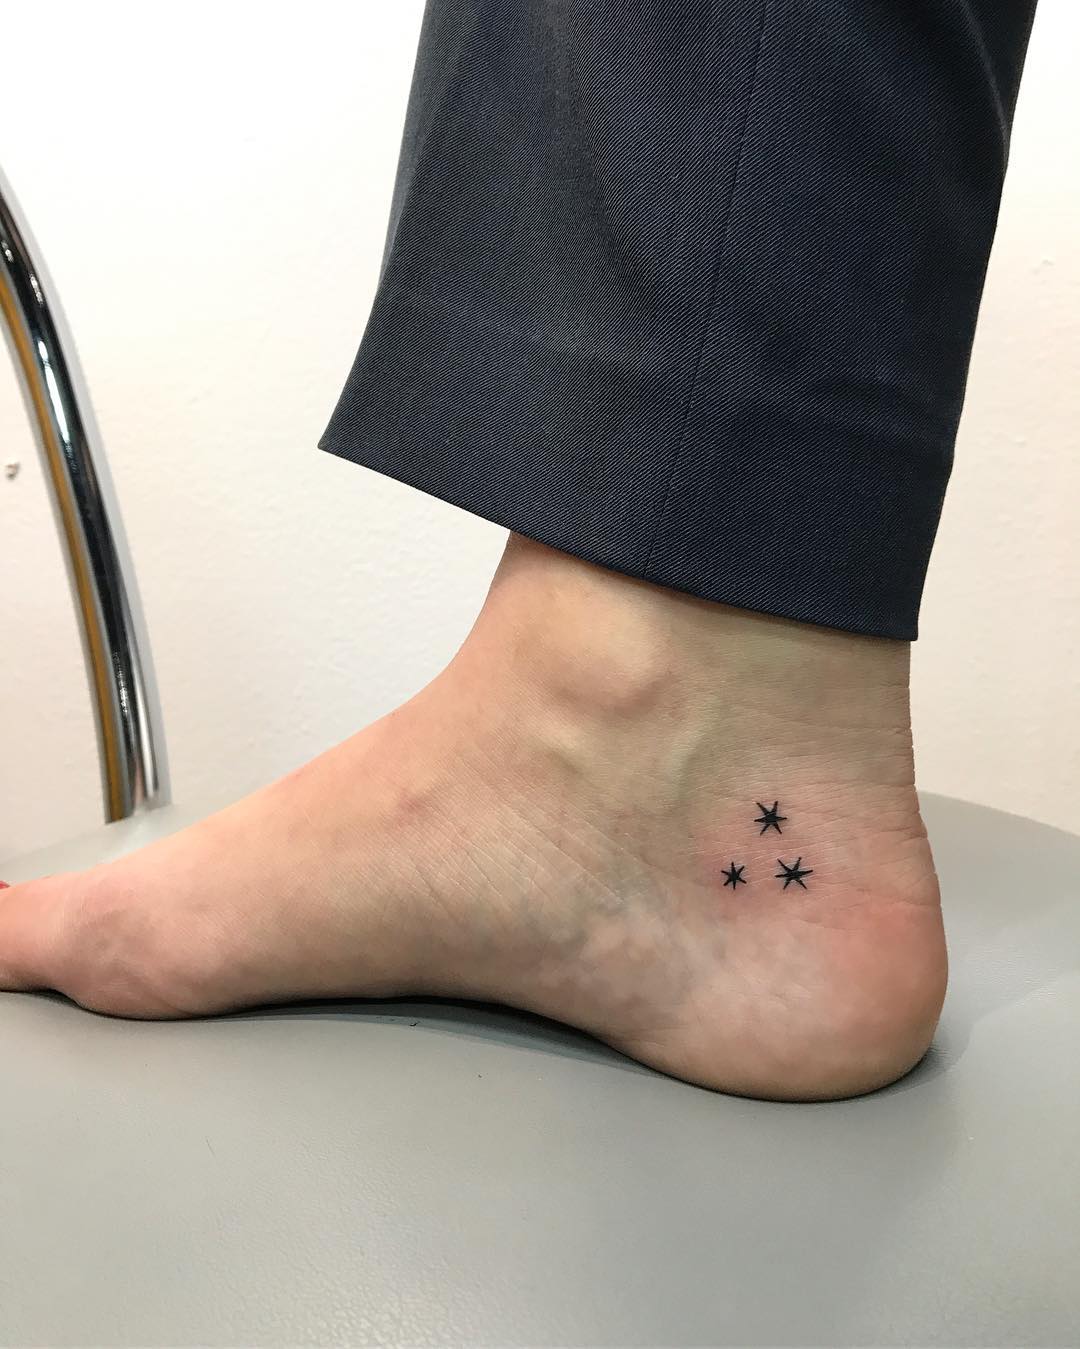 Tatuagem no pé: 100 fotos de tattoos para você se inspirar e fazer a sua1080 x 1349